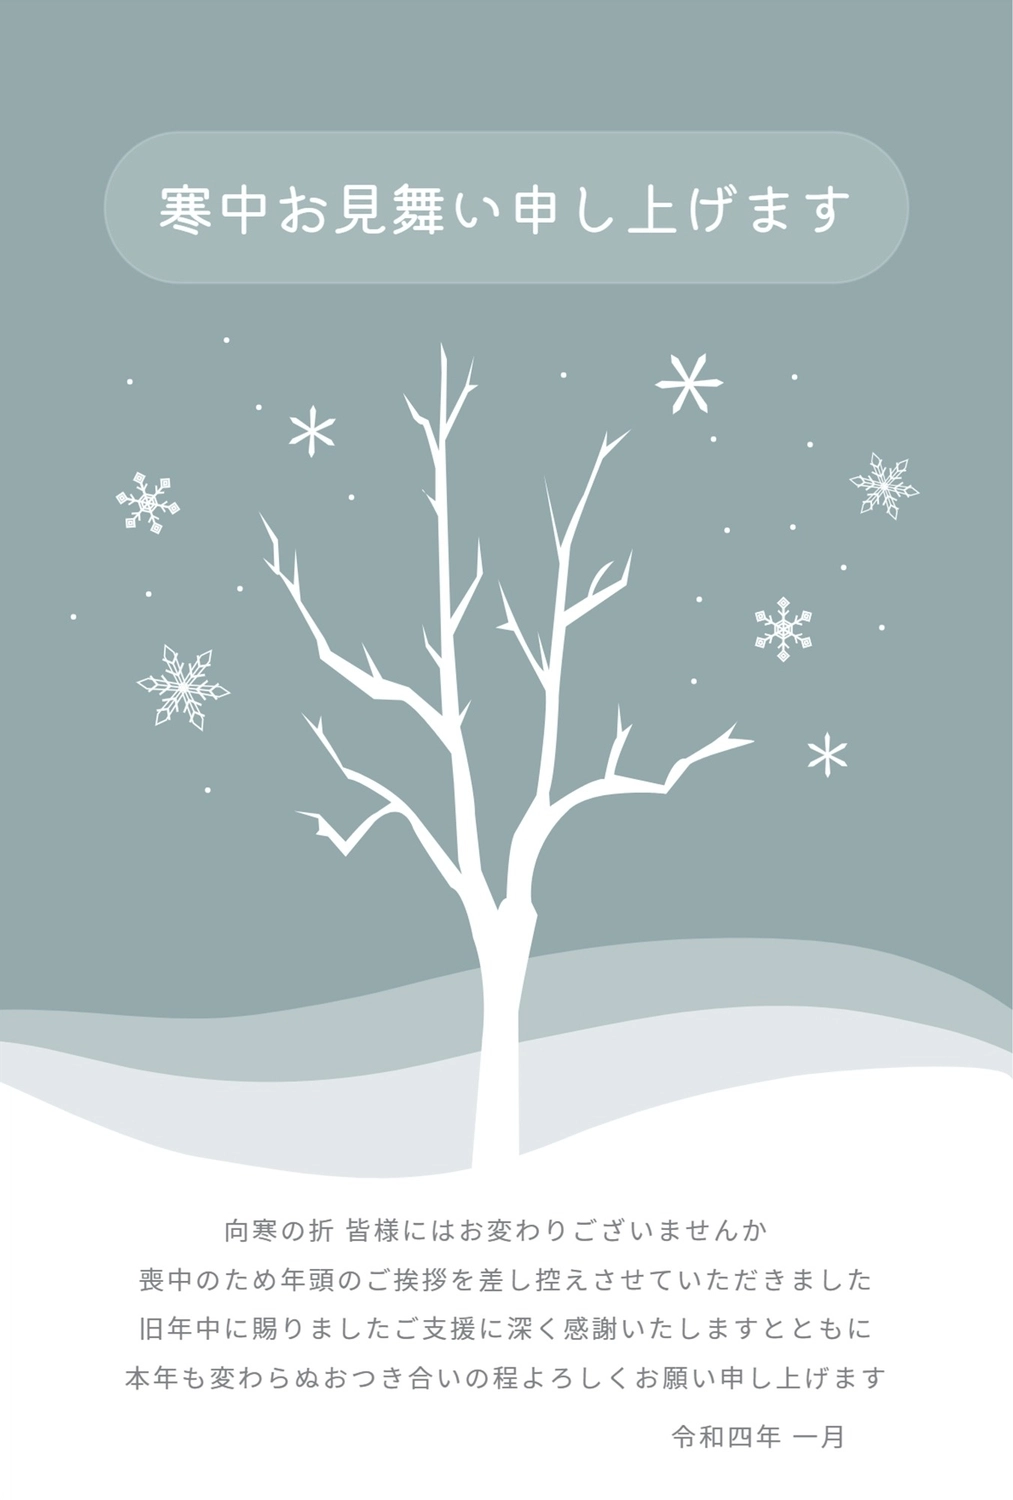 木と雪の結晶の寒中見舞い, 白い, 横書き, 縦, 寒中見舞いテンプレート